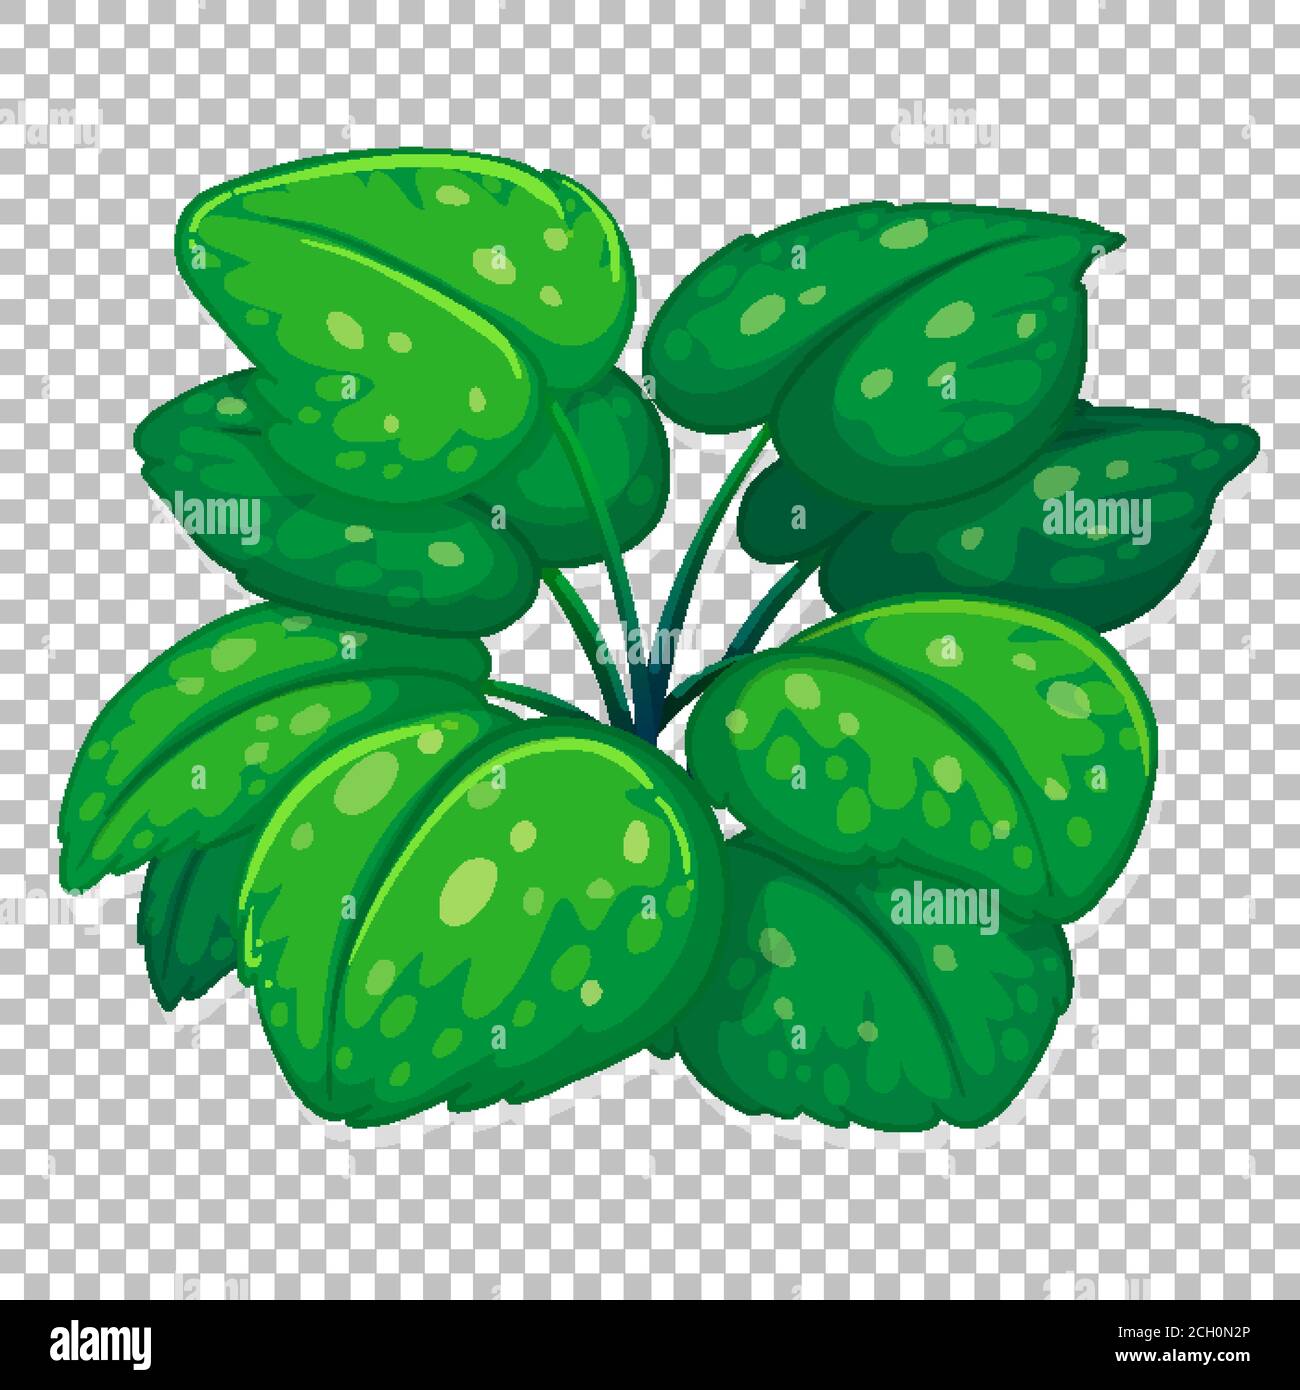 Klumpen von grünen Blättern auf transparentem Hintergrund Illustration Stock Vektor